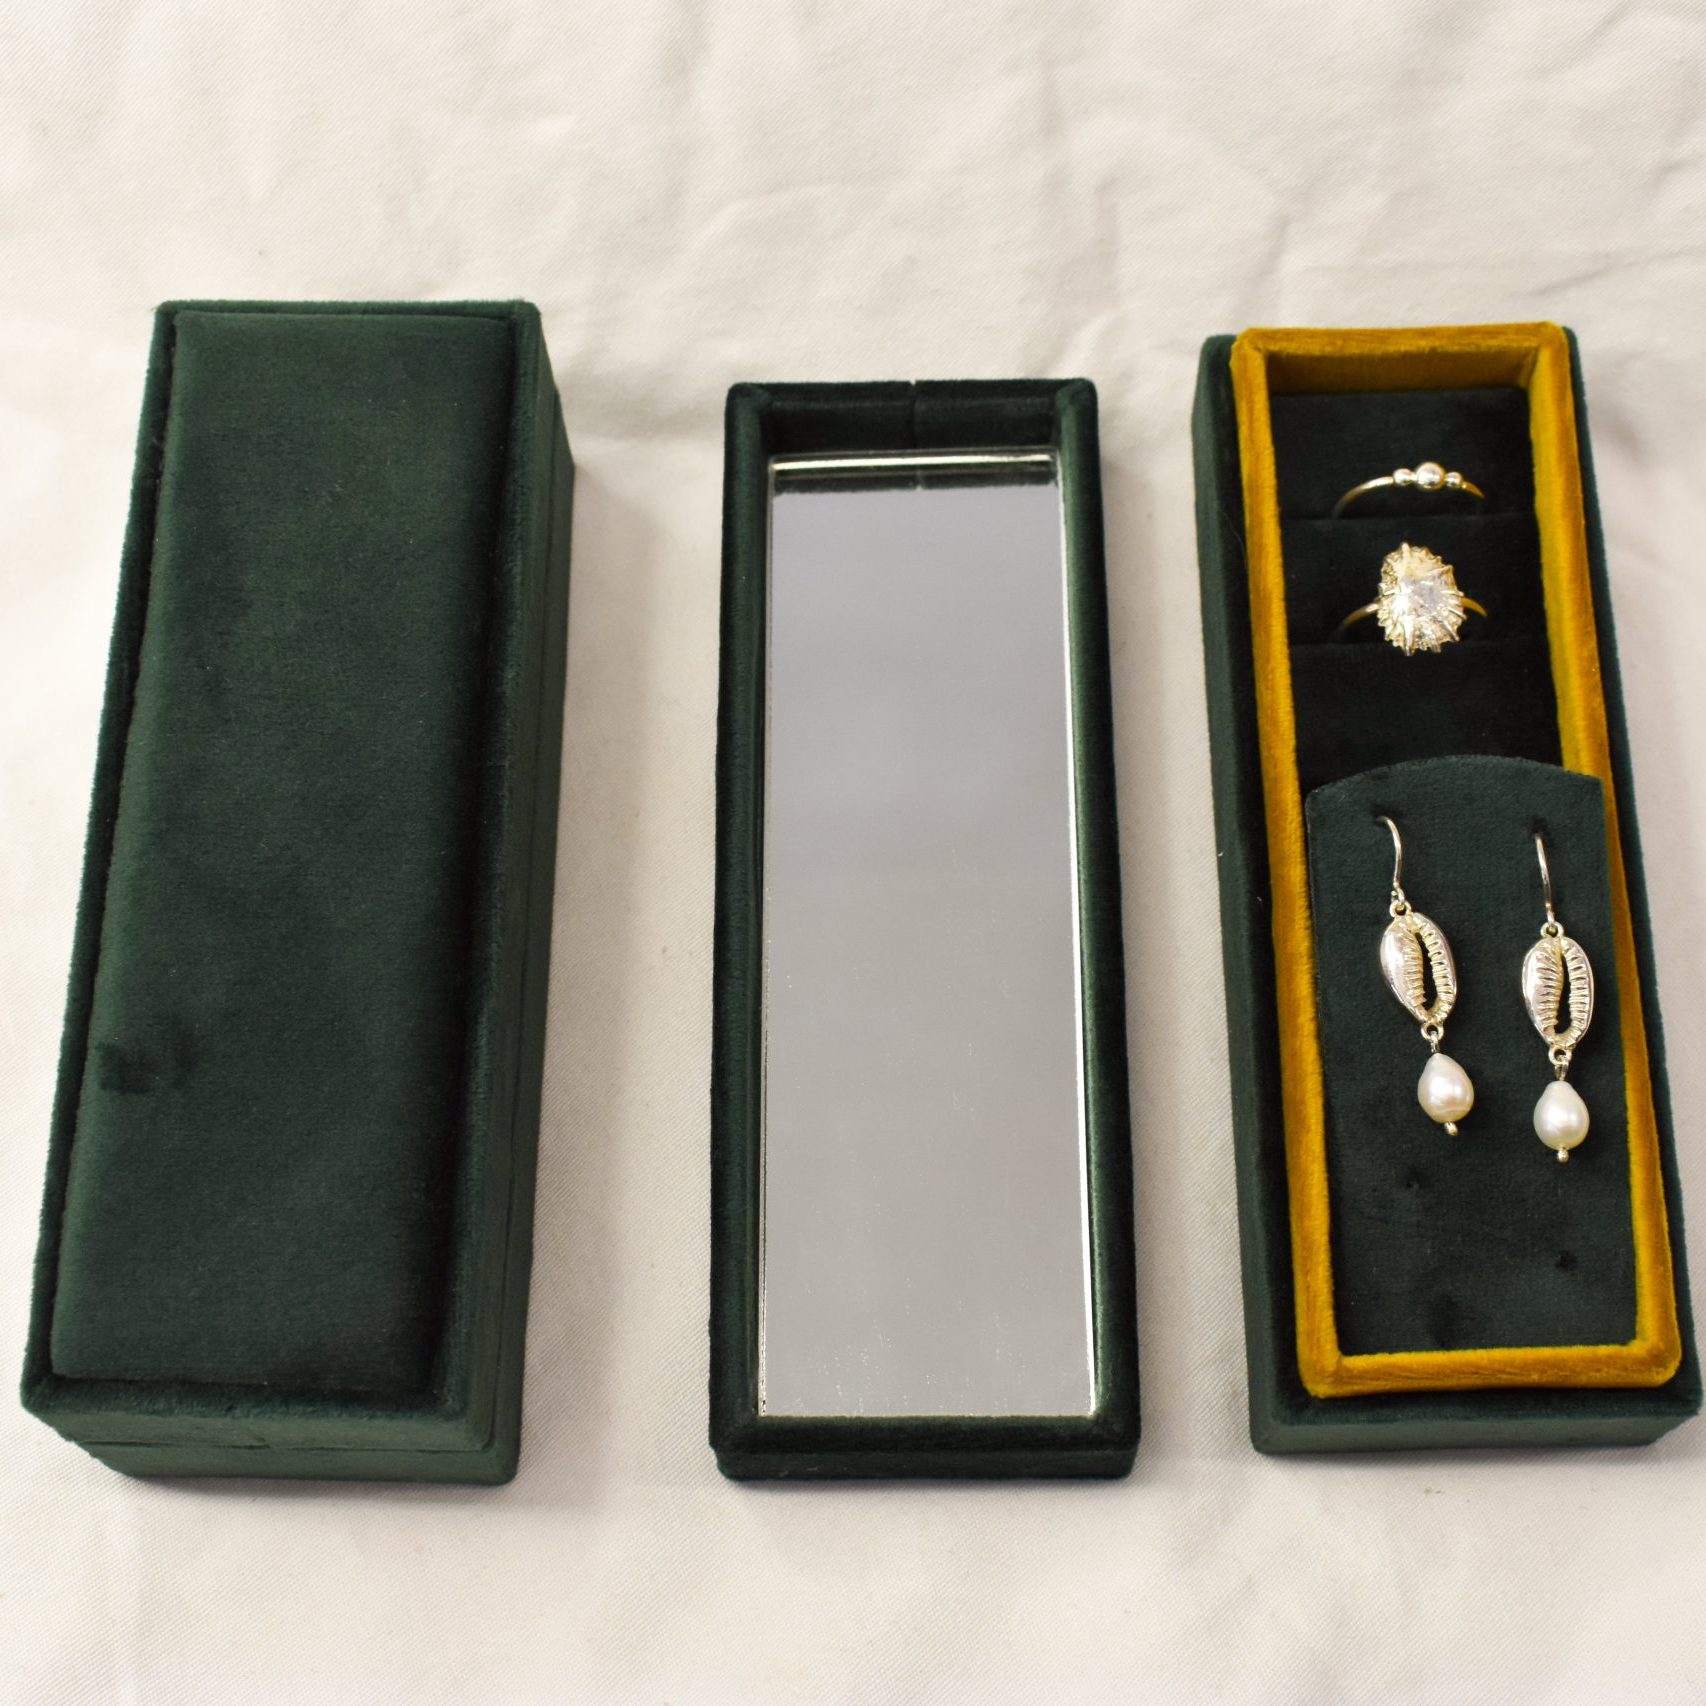 The Weekender Jewellery Box